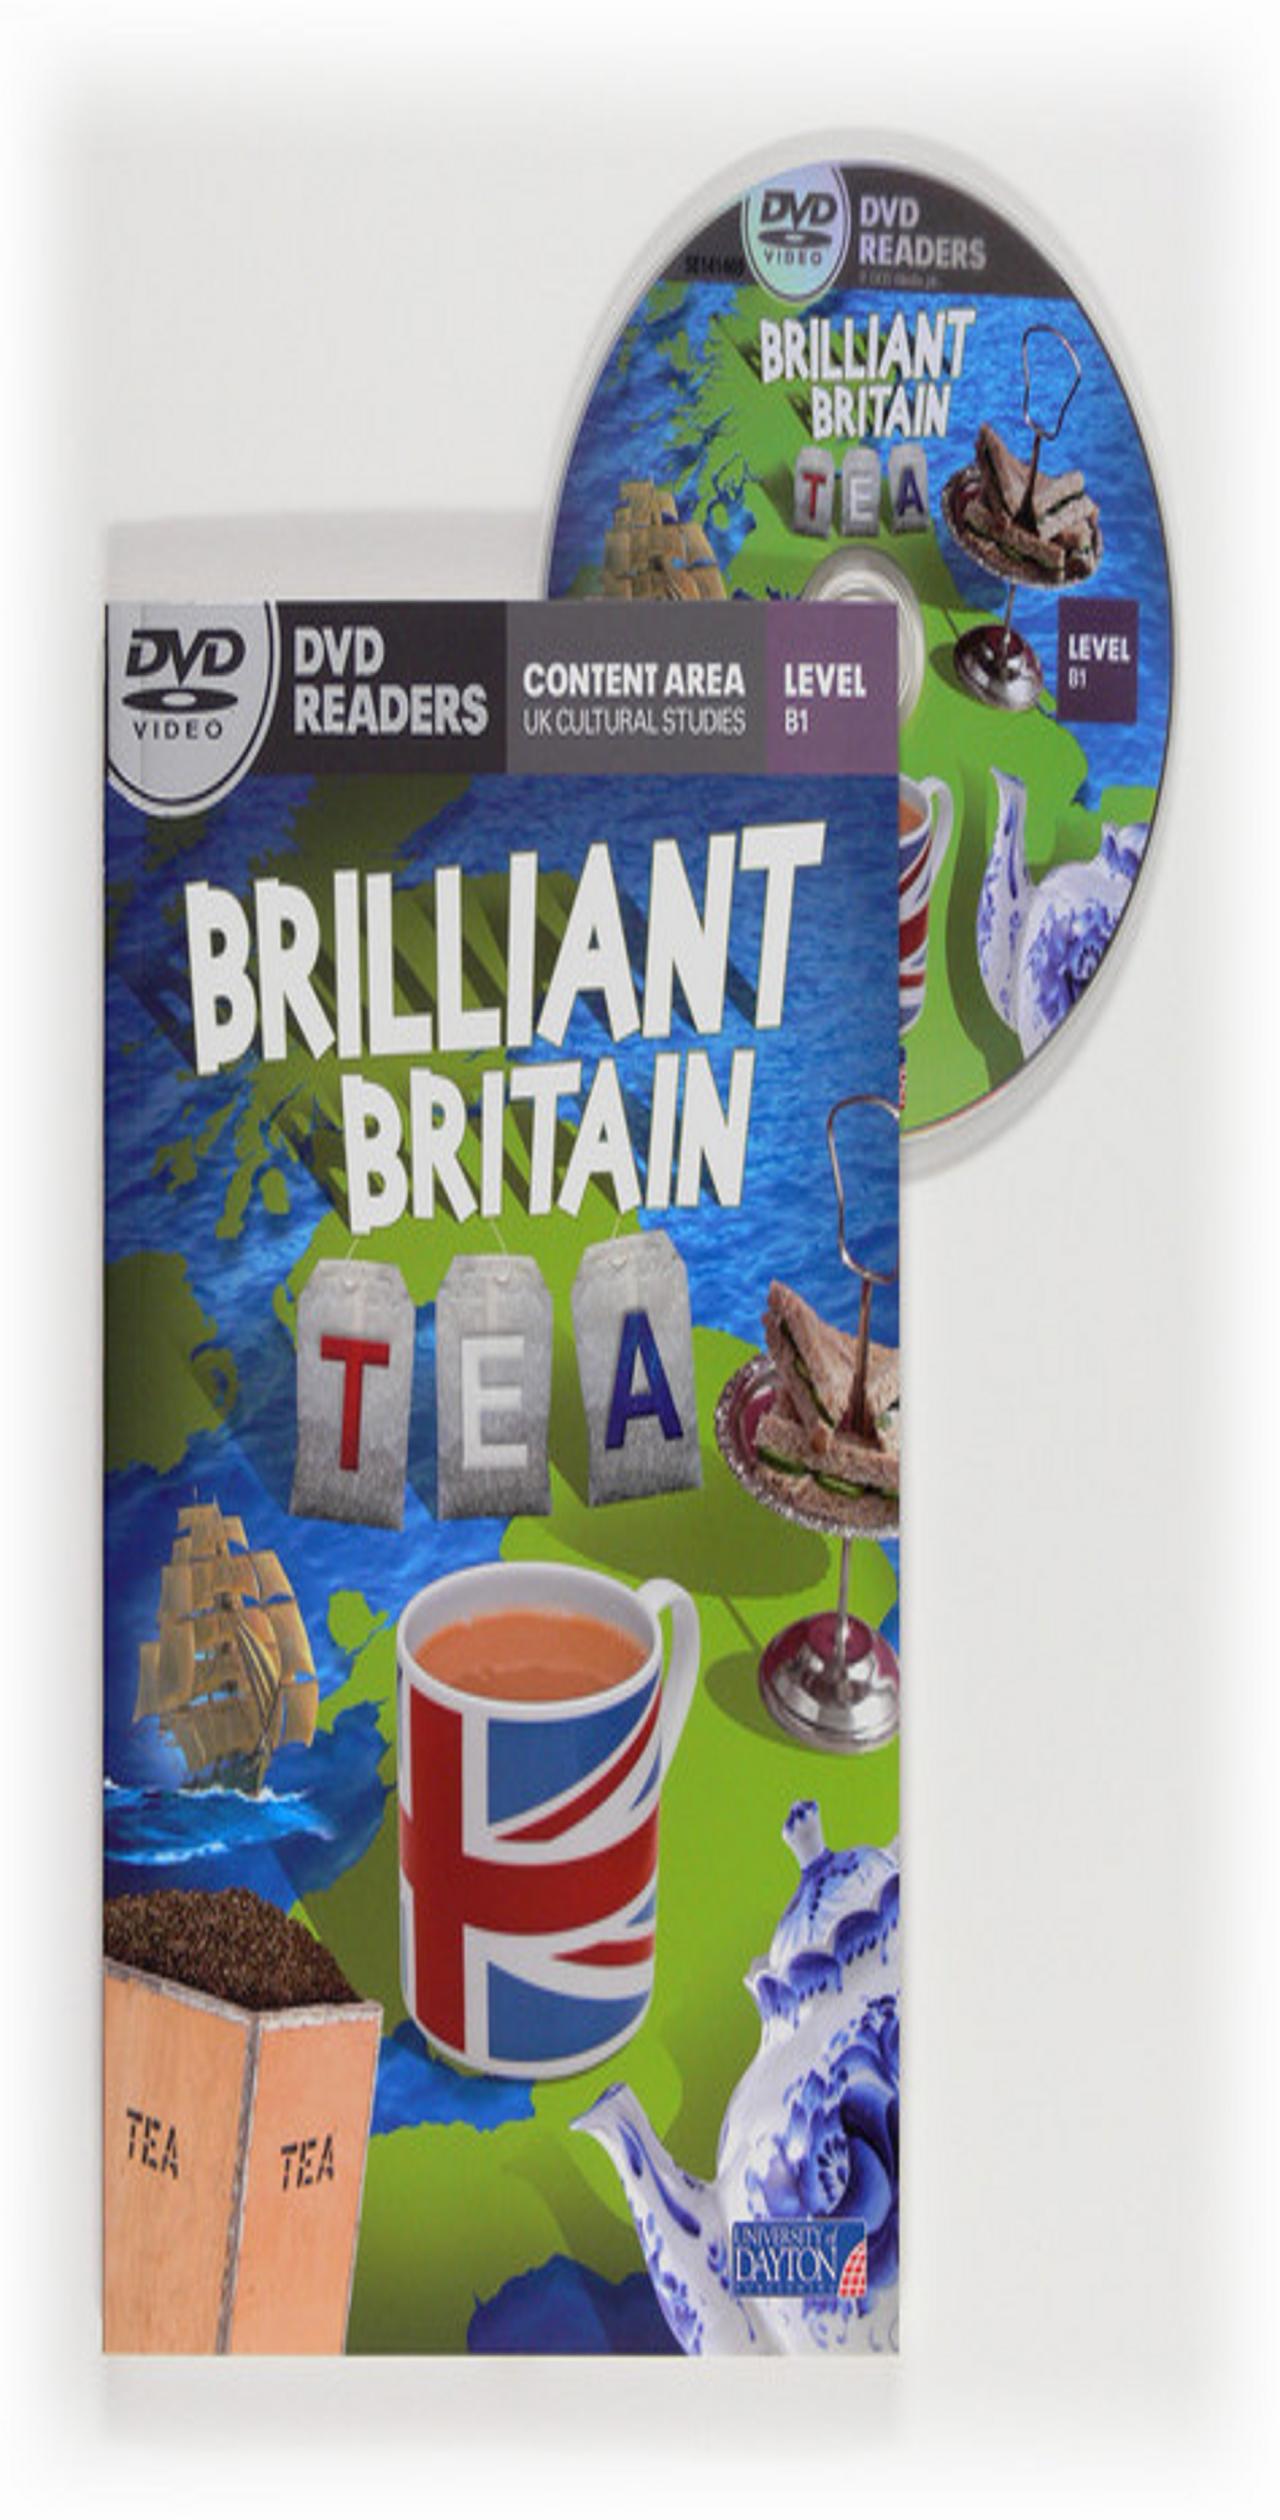 TEA: BRILLIANT BRITAIN - DVD READERS Level B1